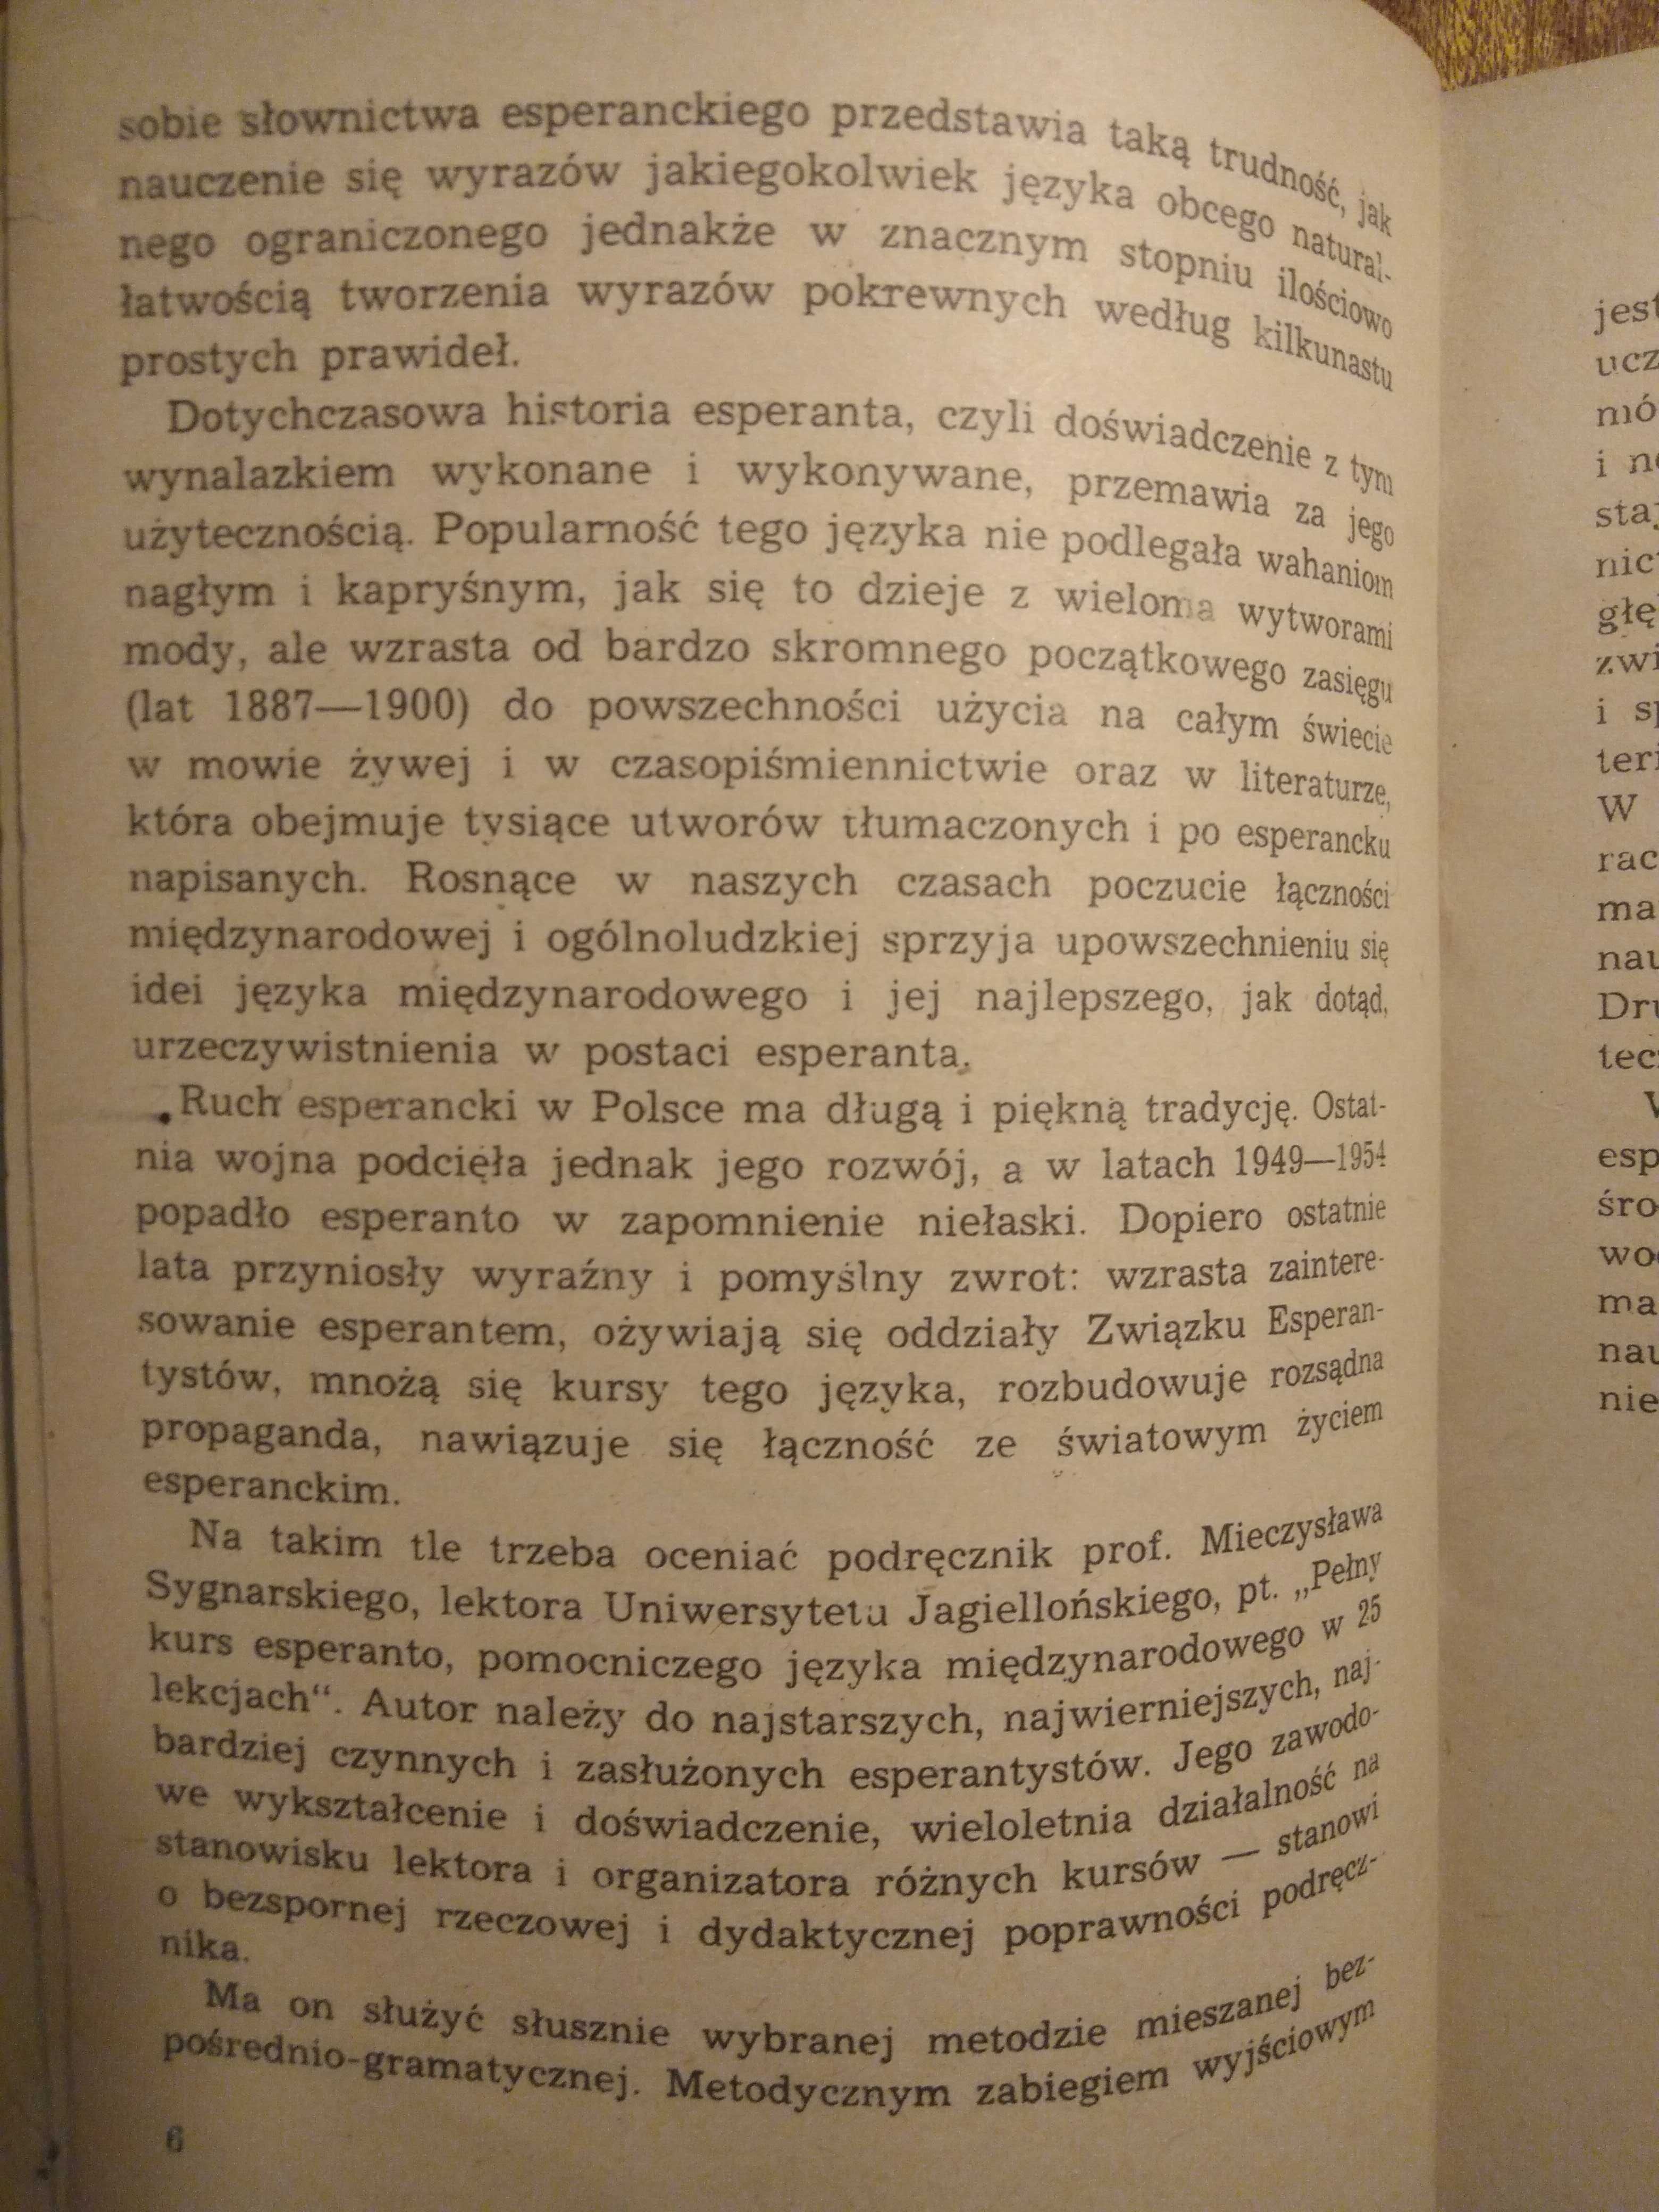 Pełny kurs międzynarodowego języka esperanto - 1956